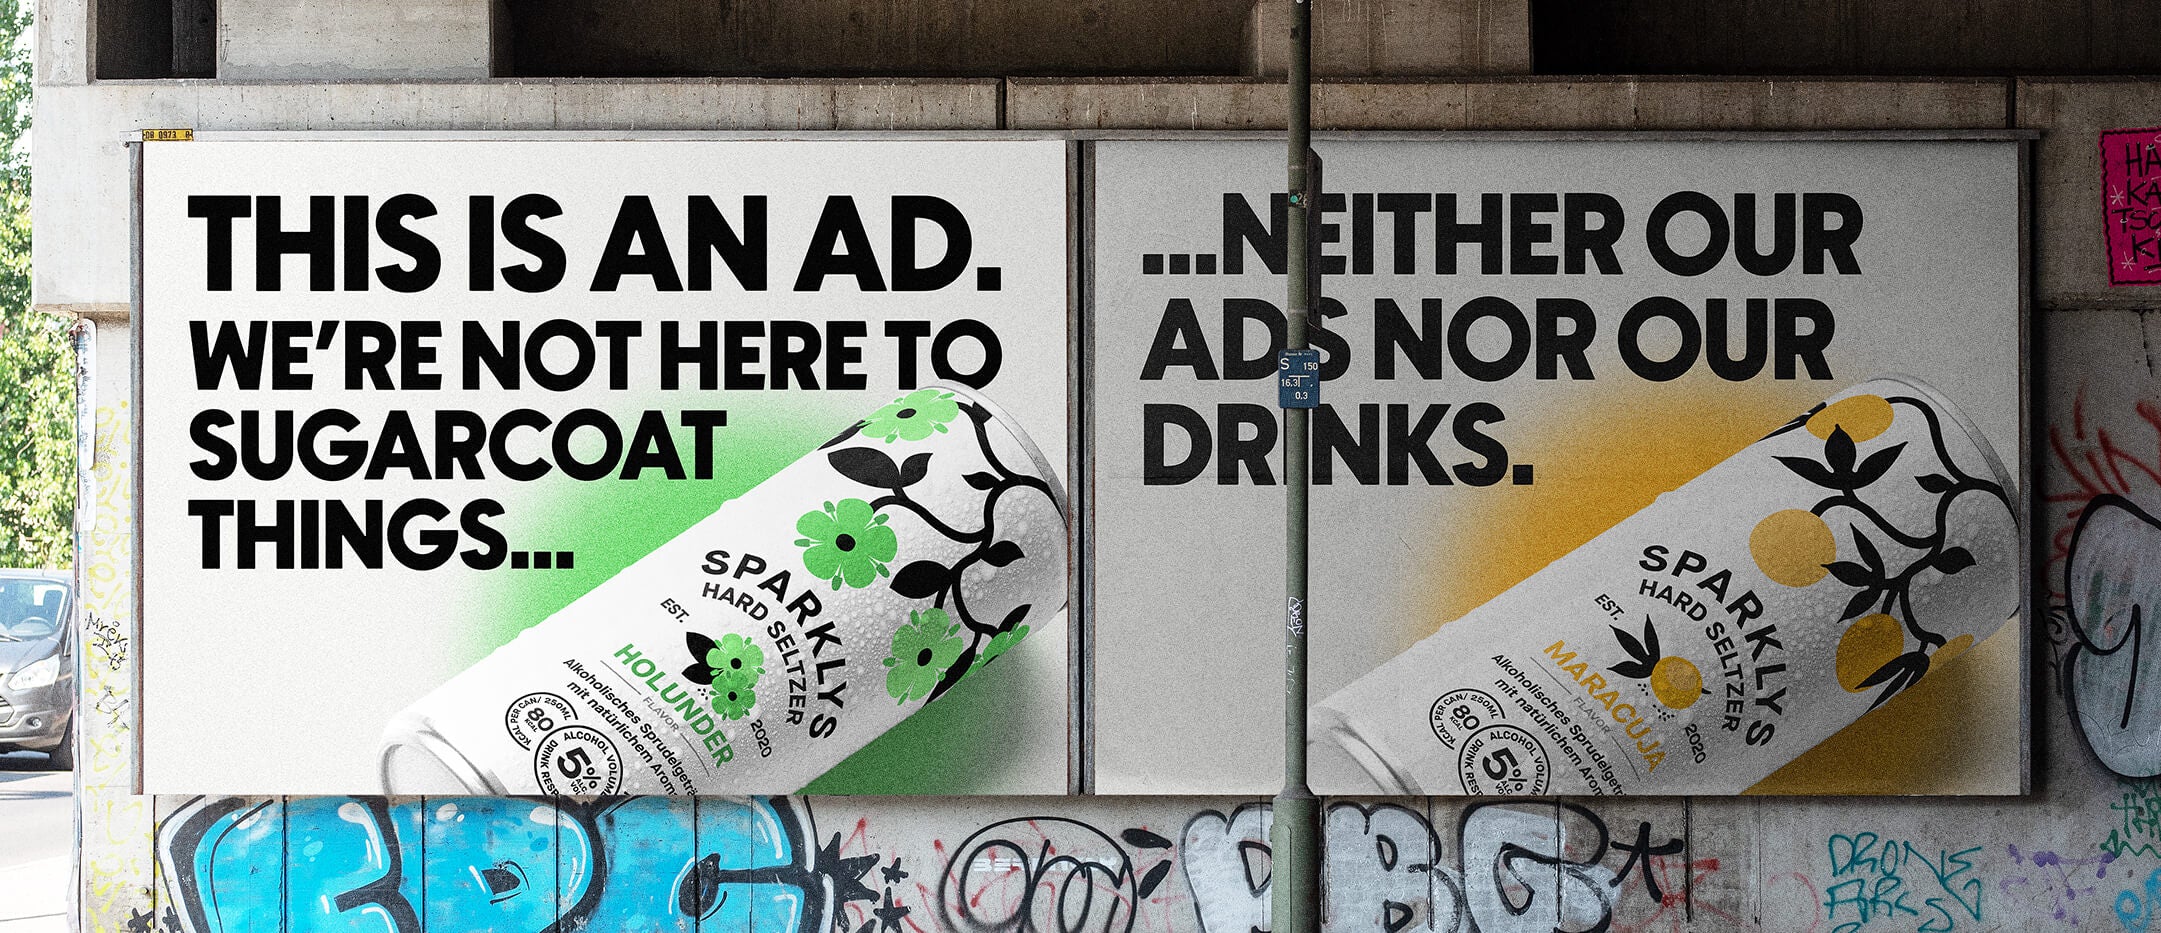 Sparklys Hard Seltzer Billboard Plakat/Poster in Zürich, Schweiz mit einem grossen Schriftzug "This is an ad. We're not here to sugarcoat things... neither our ads nor our drinks."